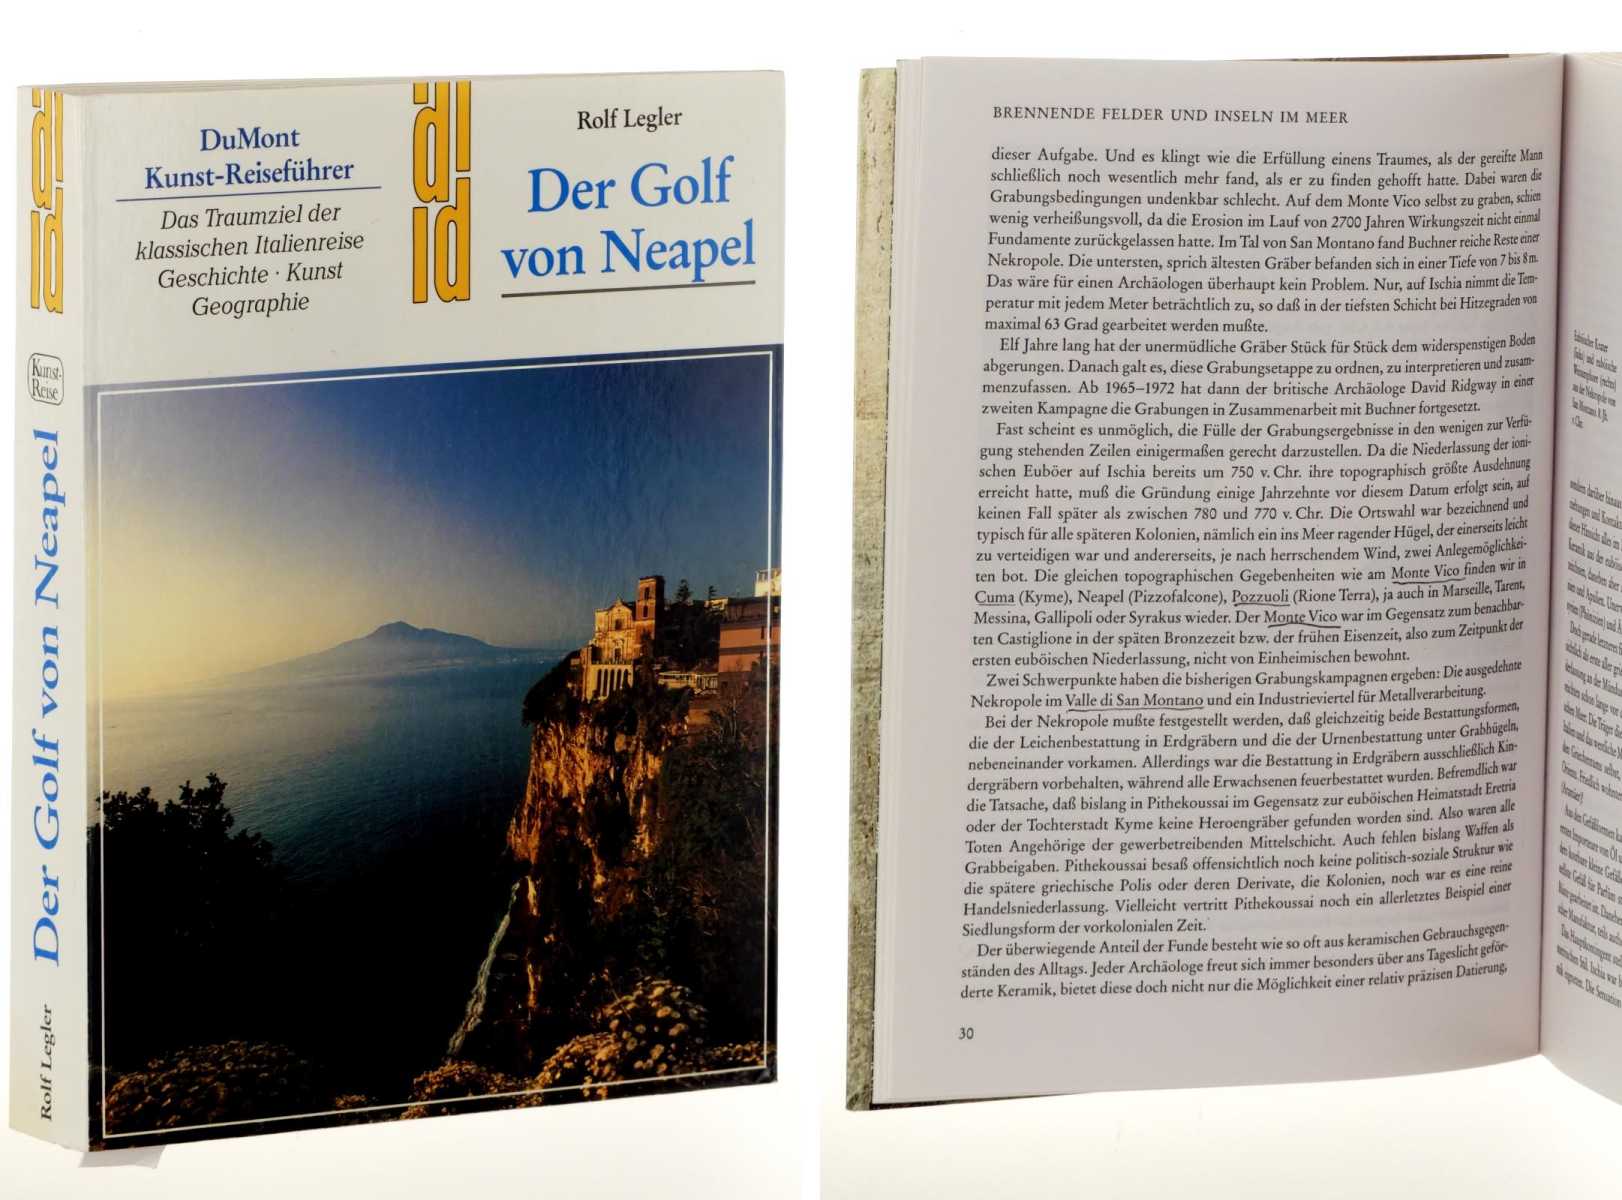 Legler, Rolf:  Der Golf von Neapel. Das Traumziel der klassischen Italienreise ; Geschichte, Kunst, Geographie. 